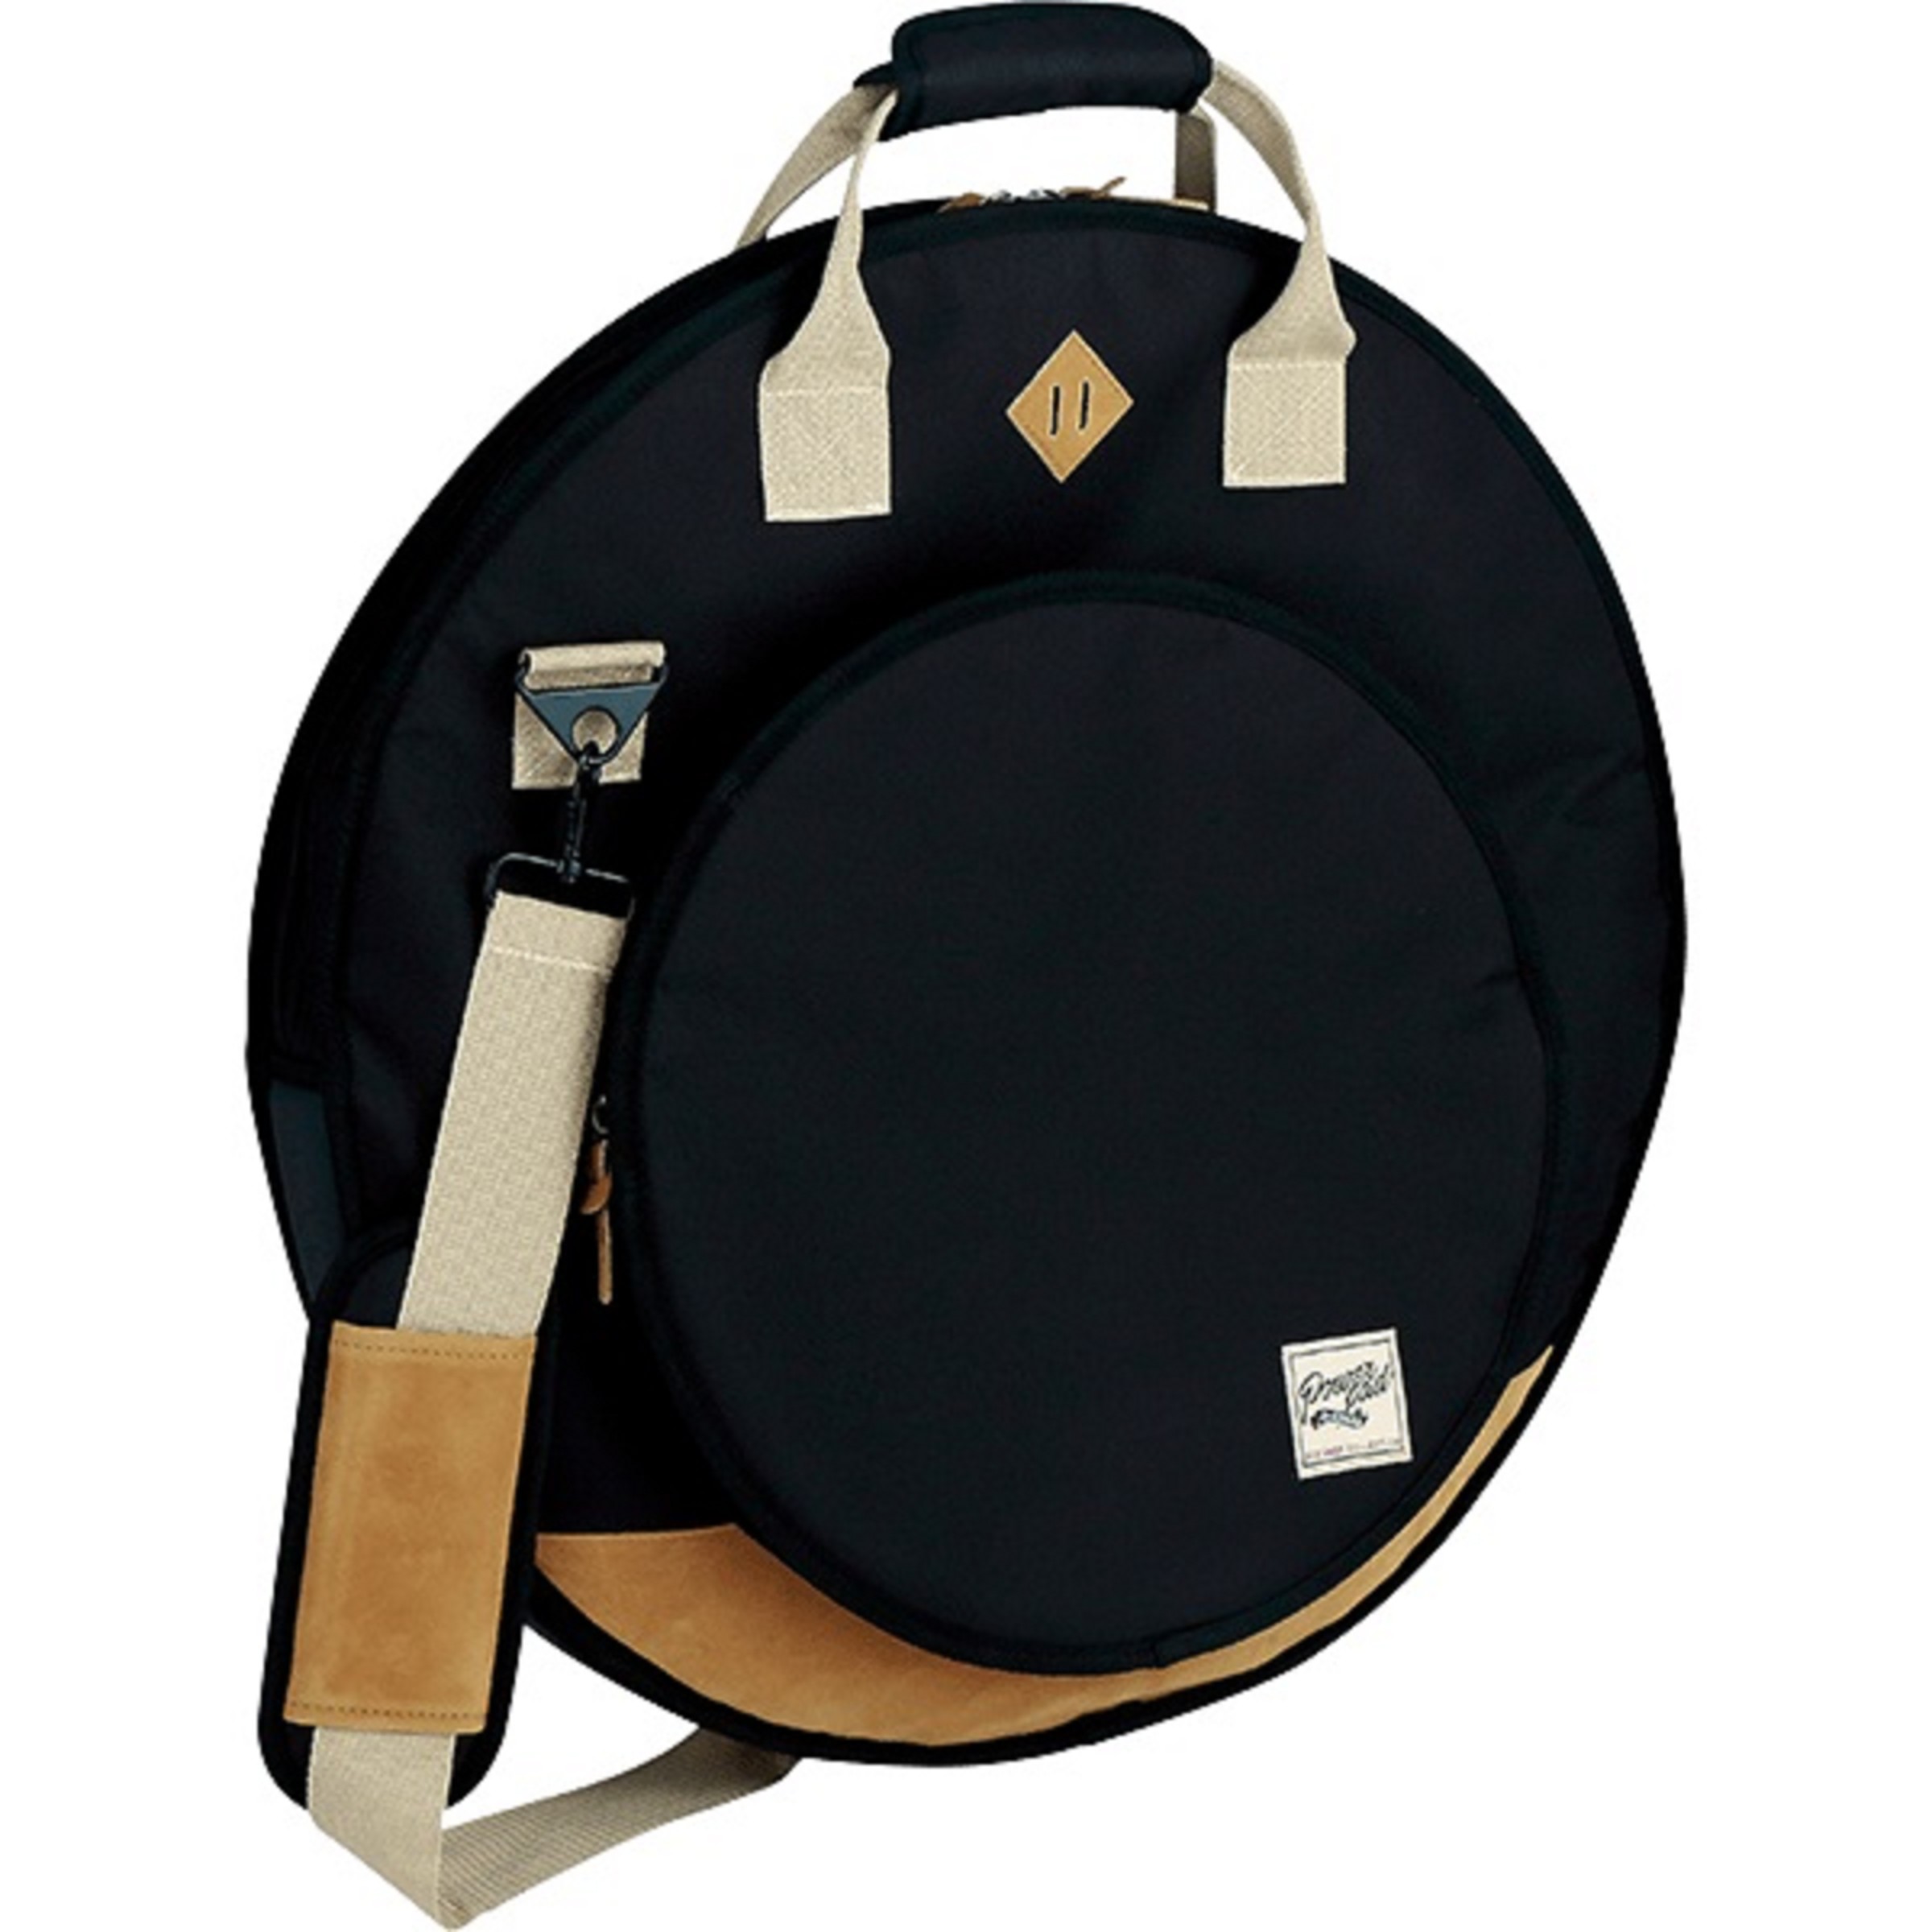 Tama TCB22BK Cymbal Bag Designer Collection Black